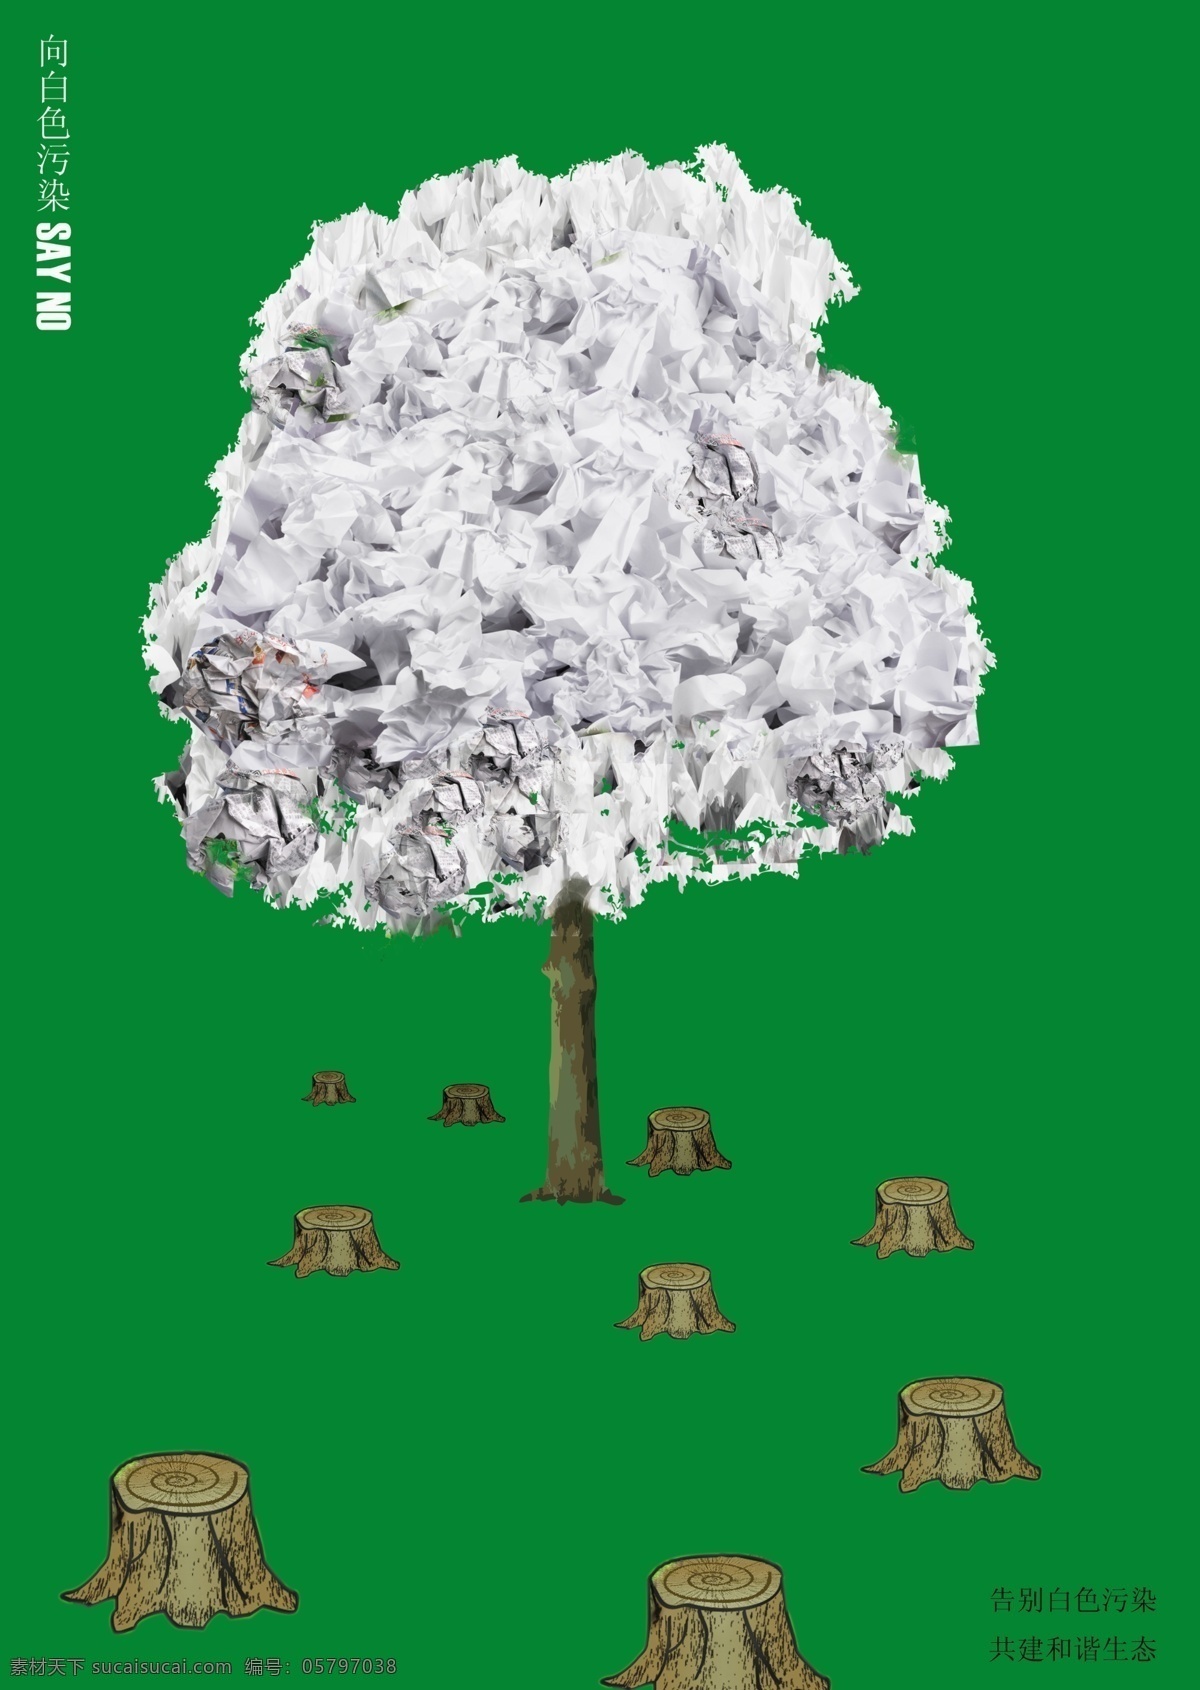 告别 白色 污染 公益海报 广告设计模板 画报 环保 树木 树桩 源文件 告别白色污染 砍伐 白色污染 环保公益海报